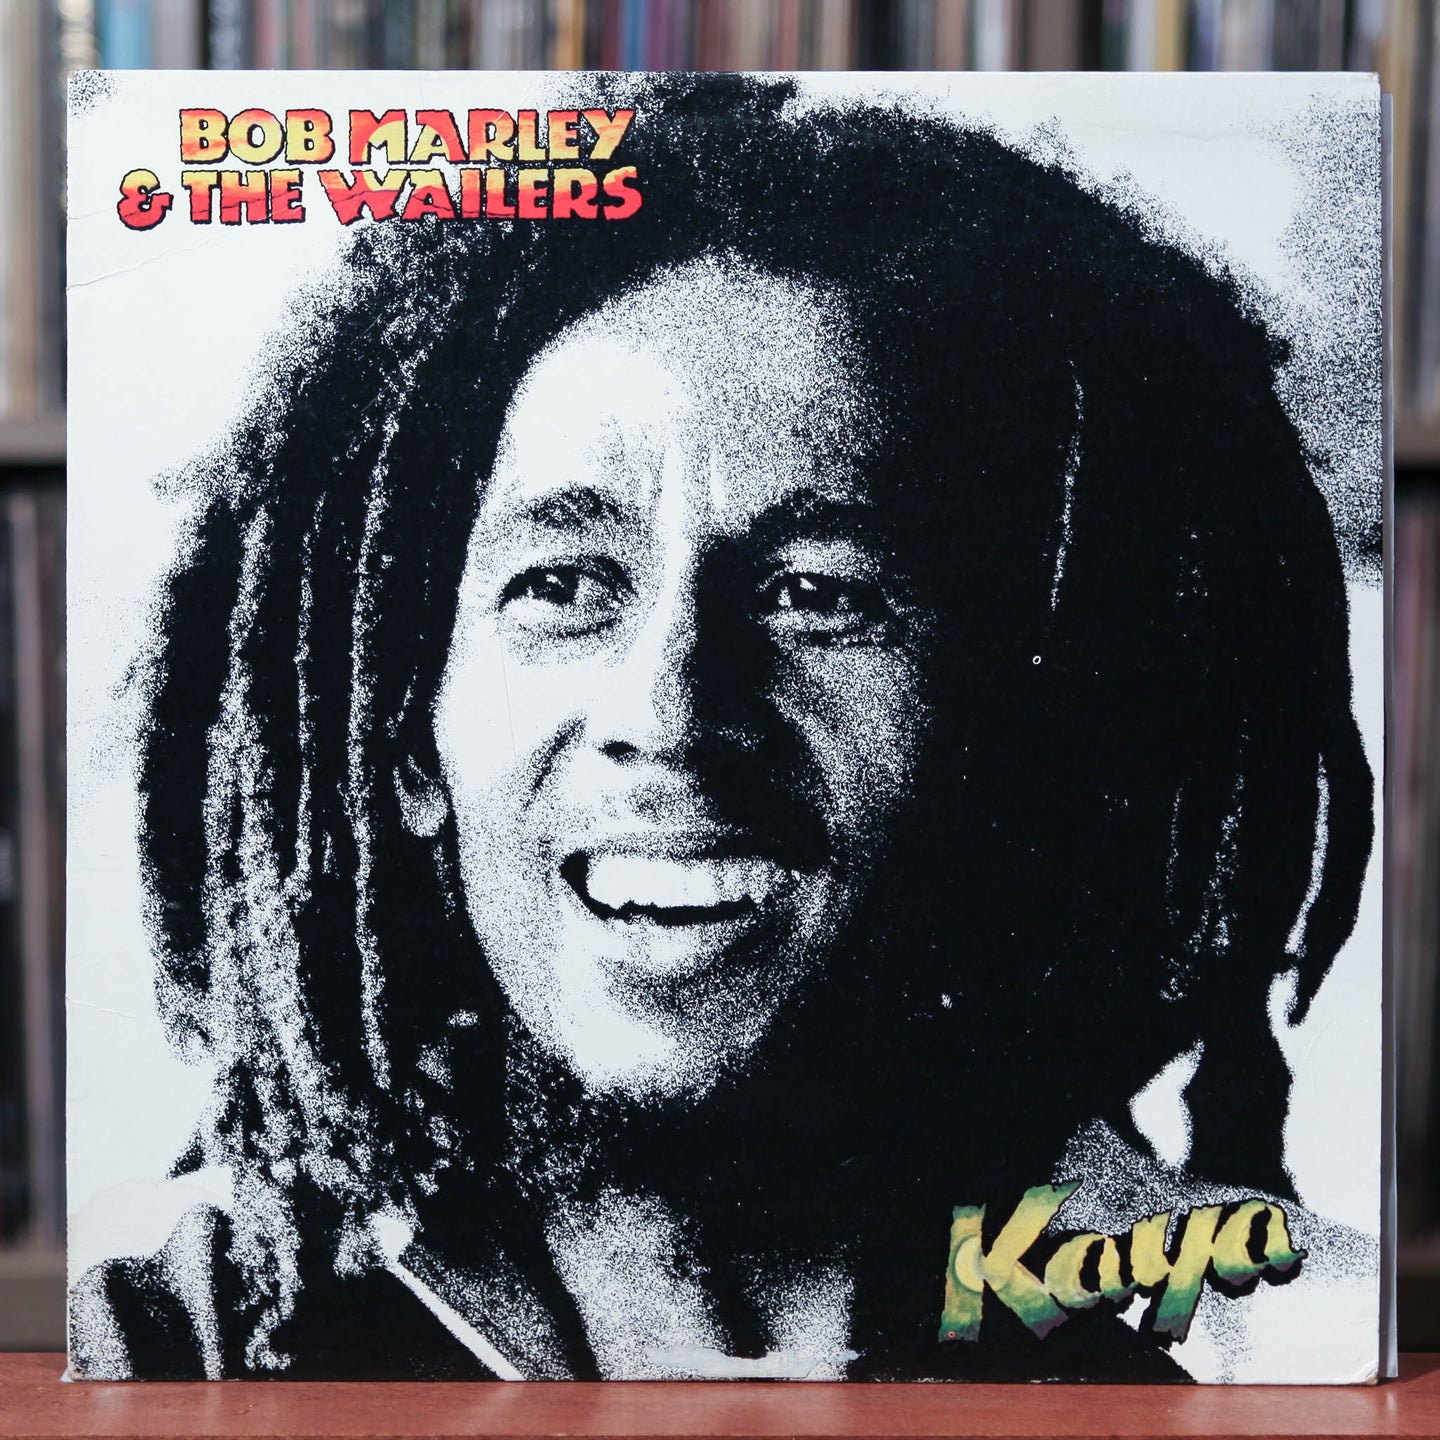 Bob Marley & The Wailers - Kaya - 1990 Tuff Gong, VG+/VG